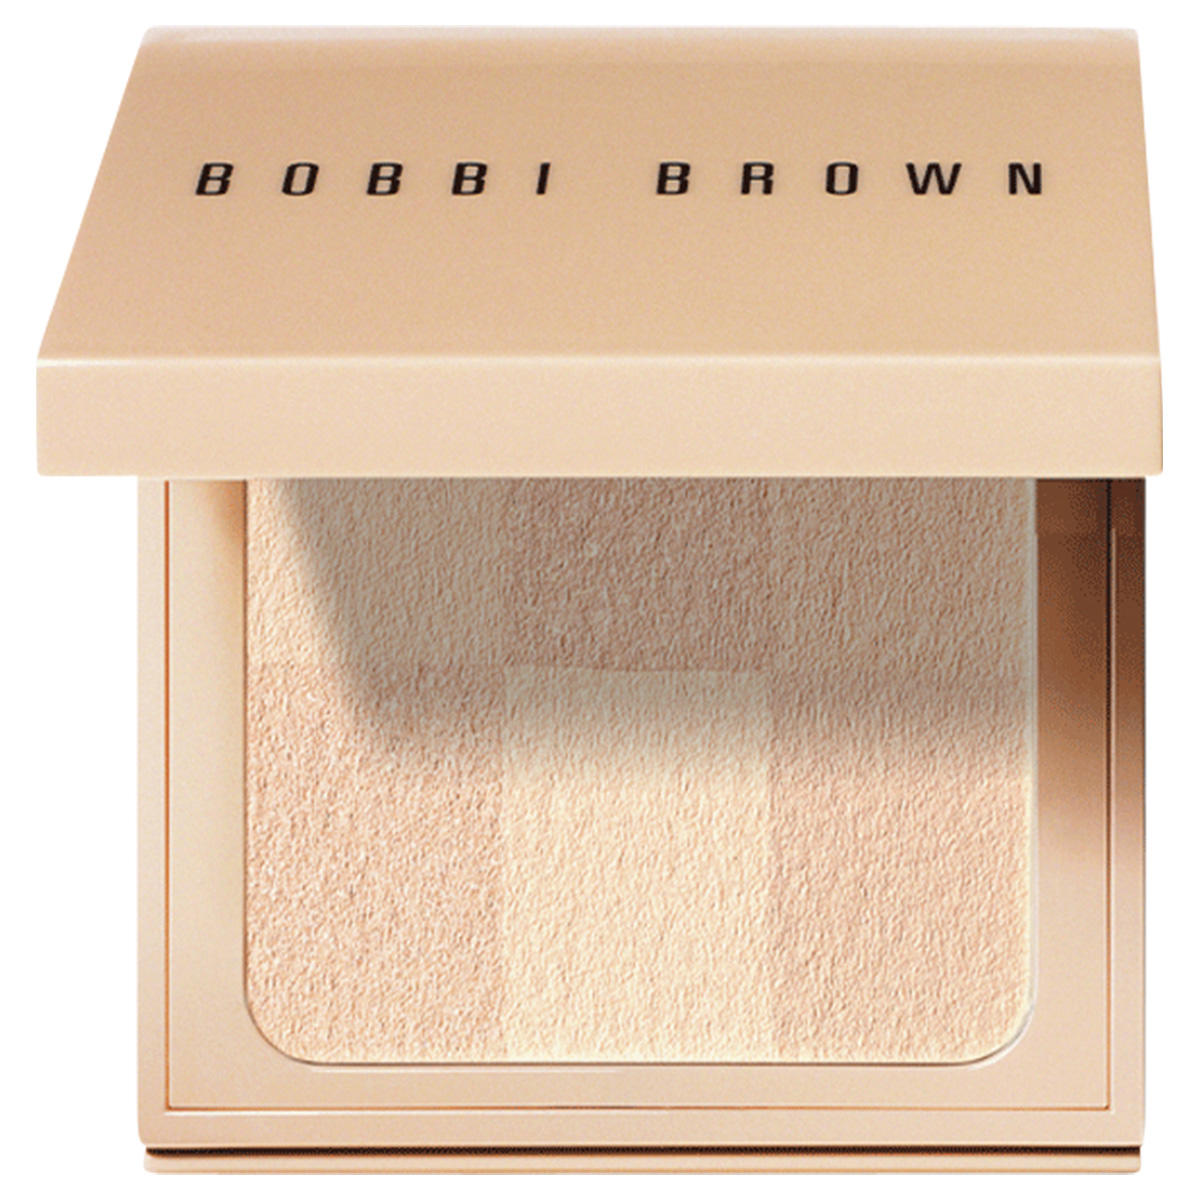 BOBBI BROWN Nude Finish Illuminating Powder  - 1